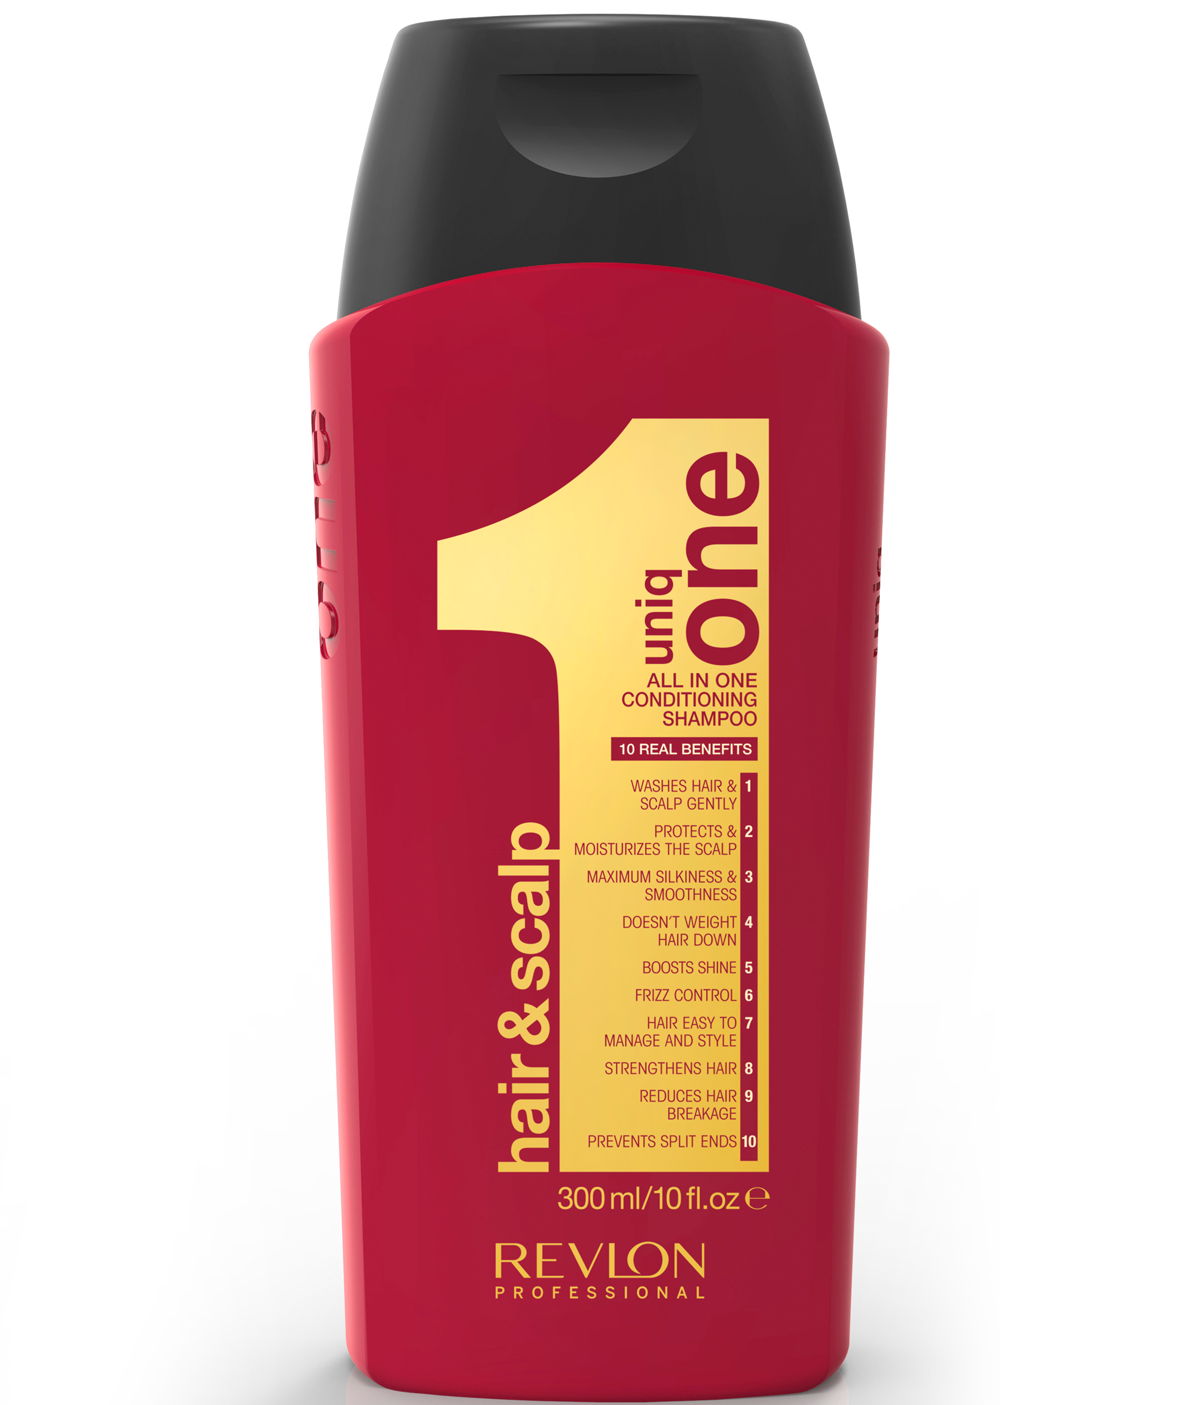 Uniq one shampoo and conditioner